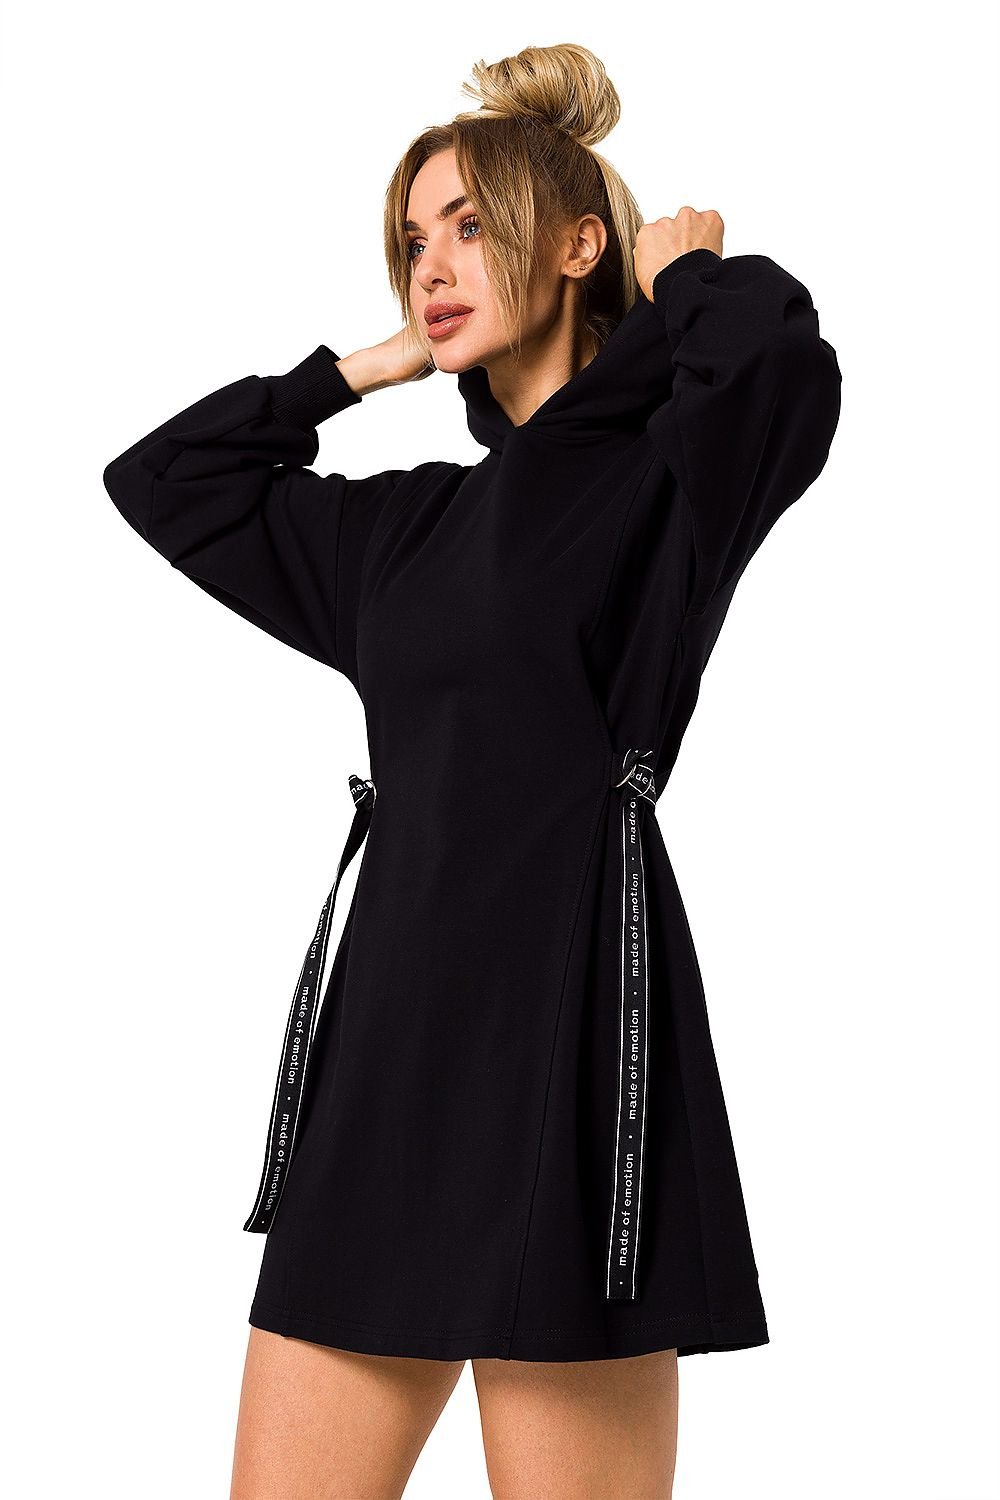 TEEK - Side Tied Sweatshirt Hoodie Dress DRESS TEEK MH black L 